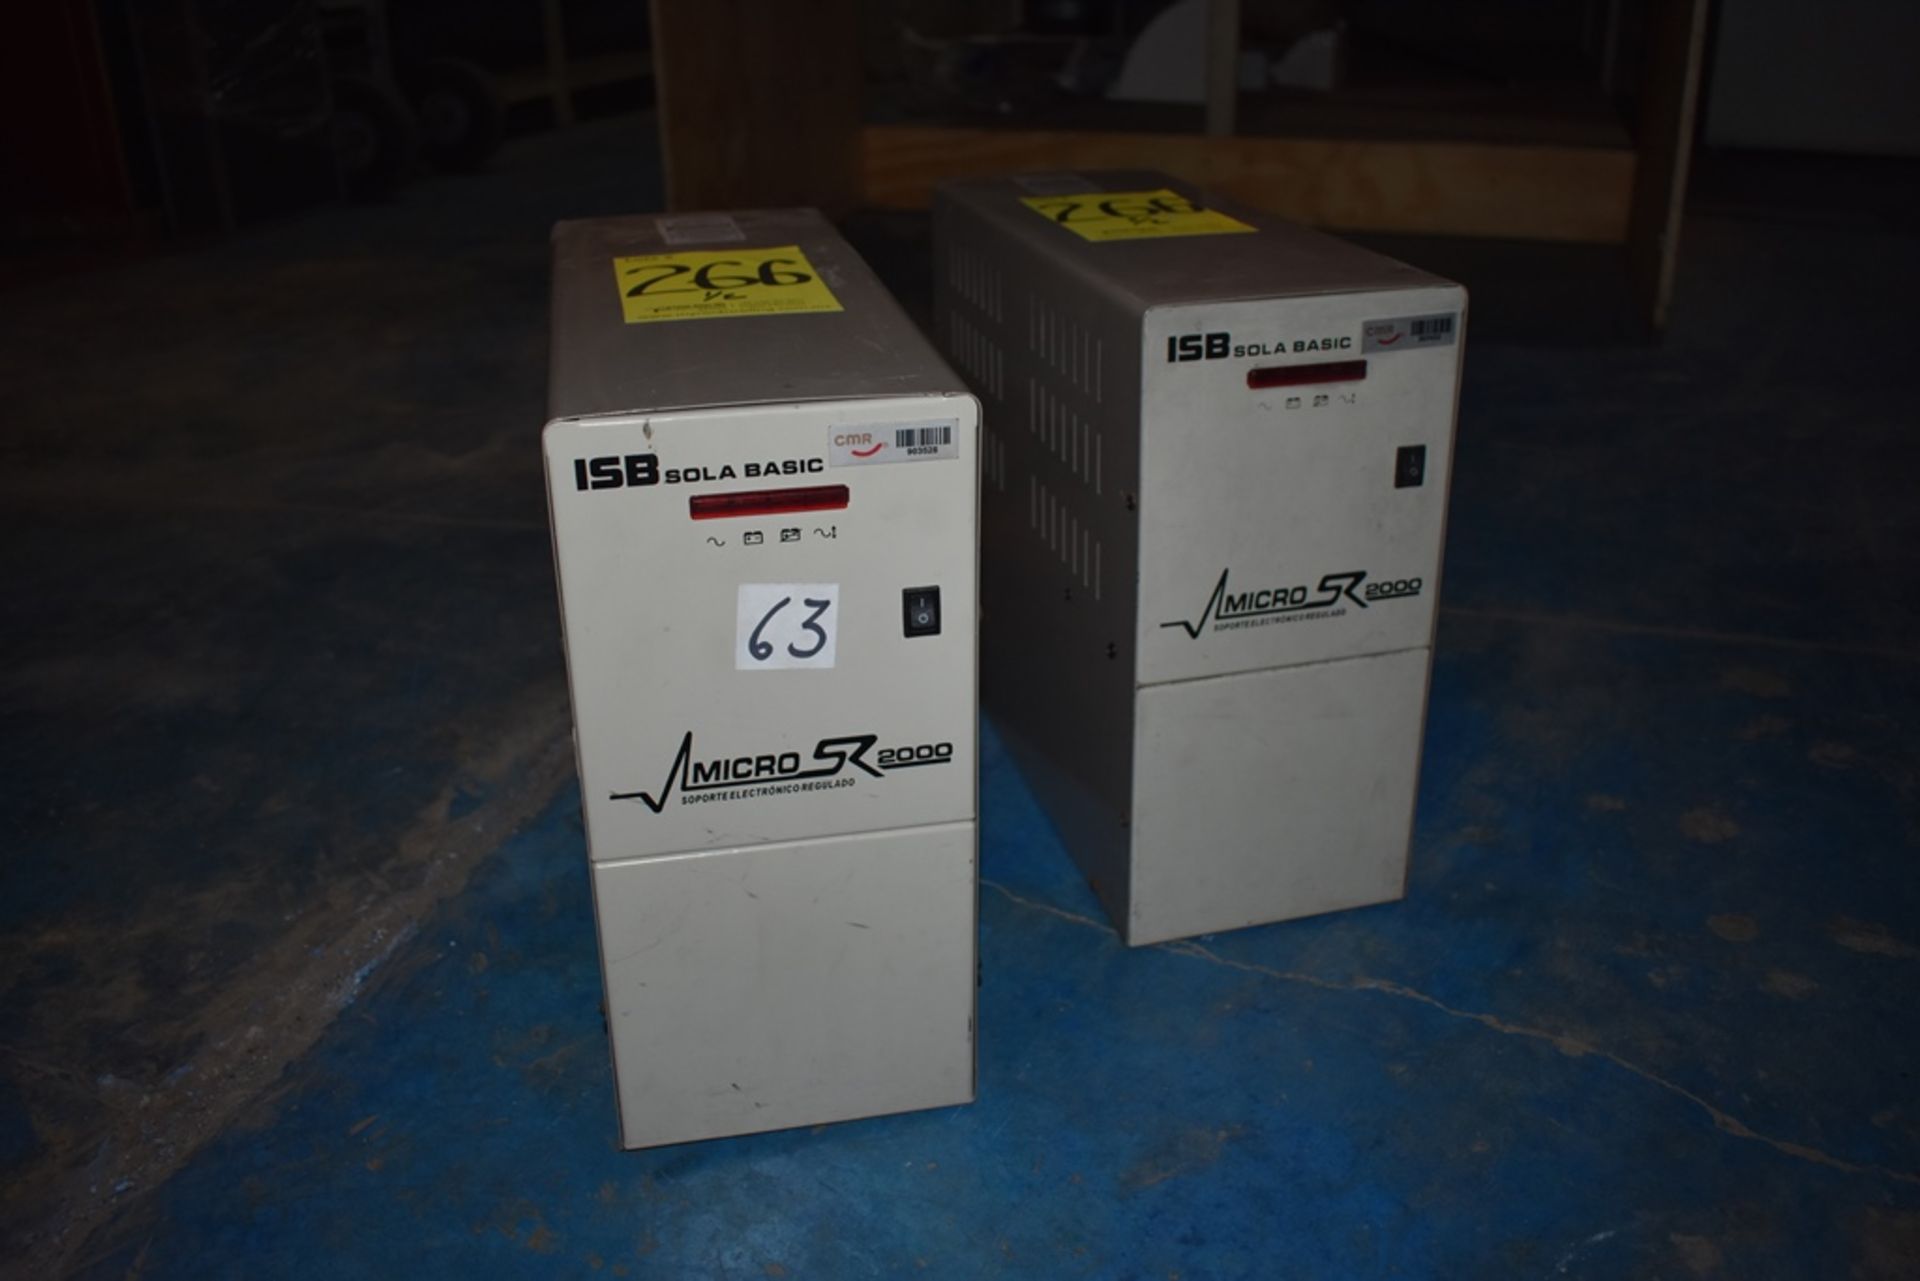 Dos reguladores de voltaje marca ISB Solabasic, modelo: XR-21-202, Series: E18F02675, E18H01516 - Image 3 of 17